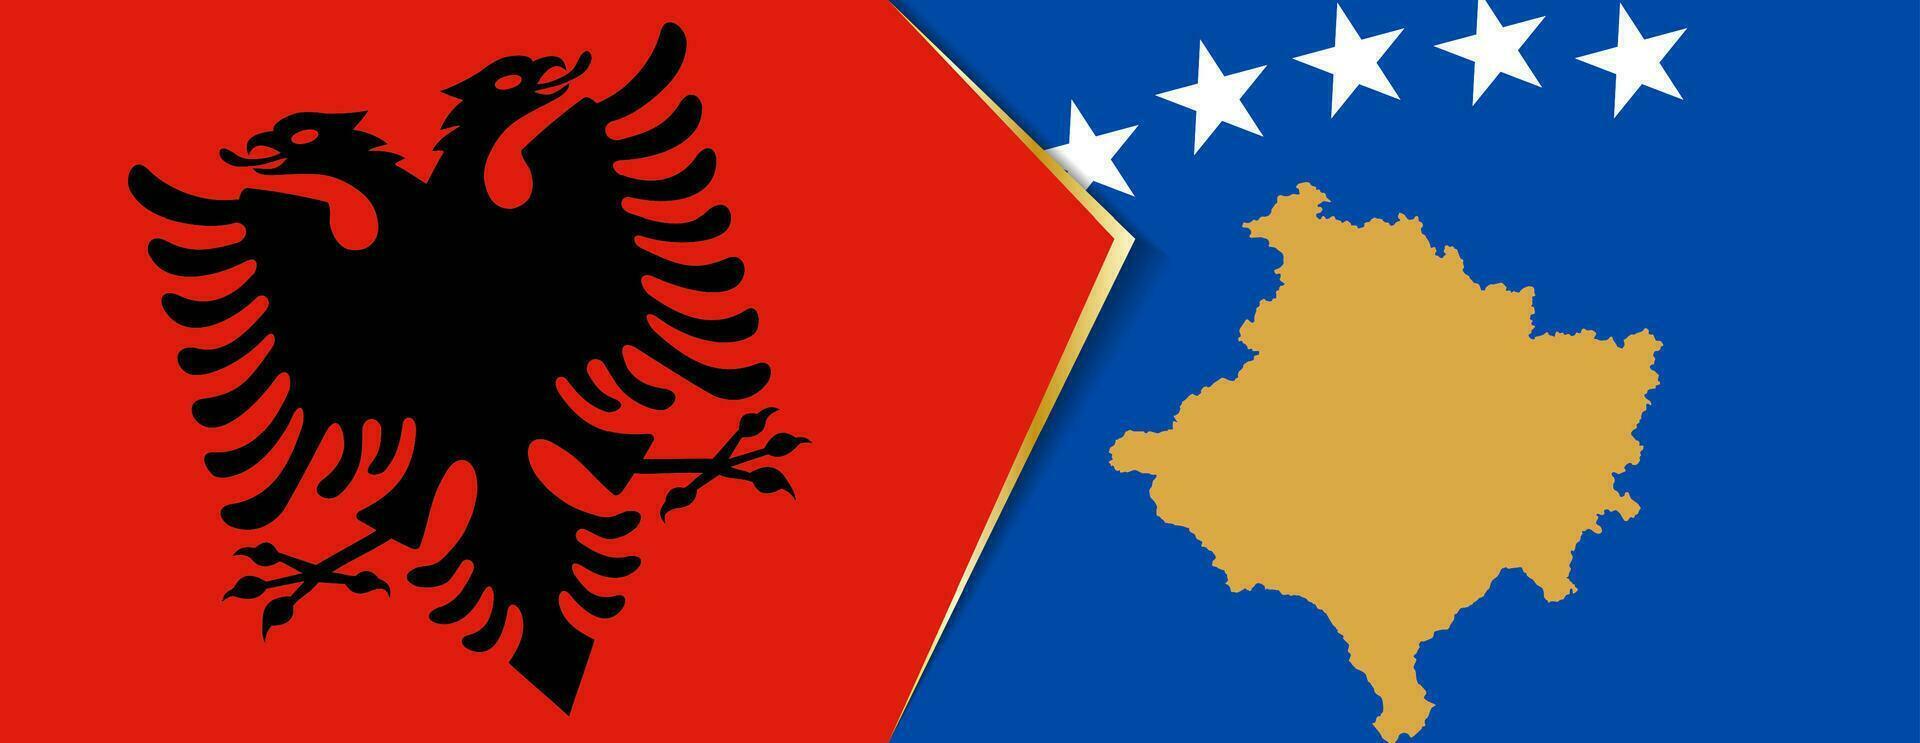 Albanië en Kosovo vlaggen, twee vector vlaggen.